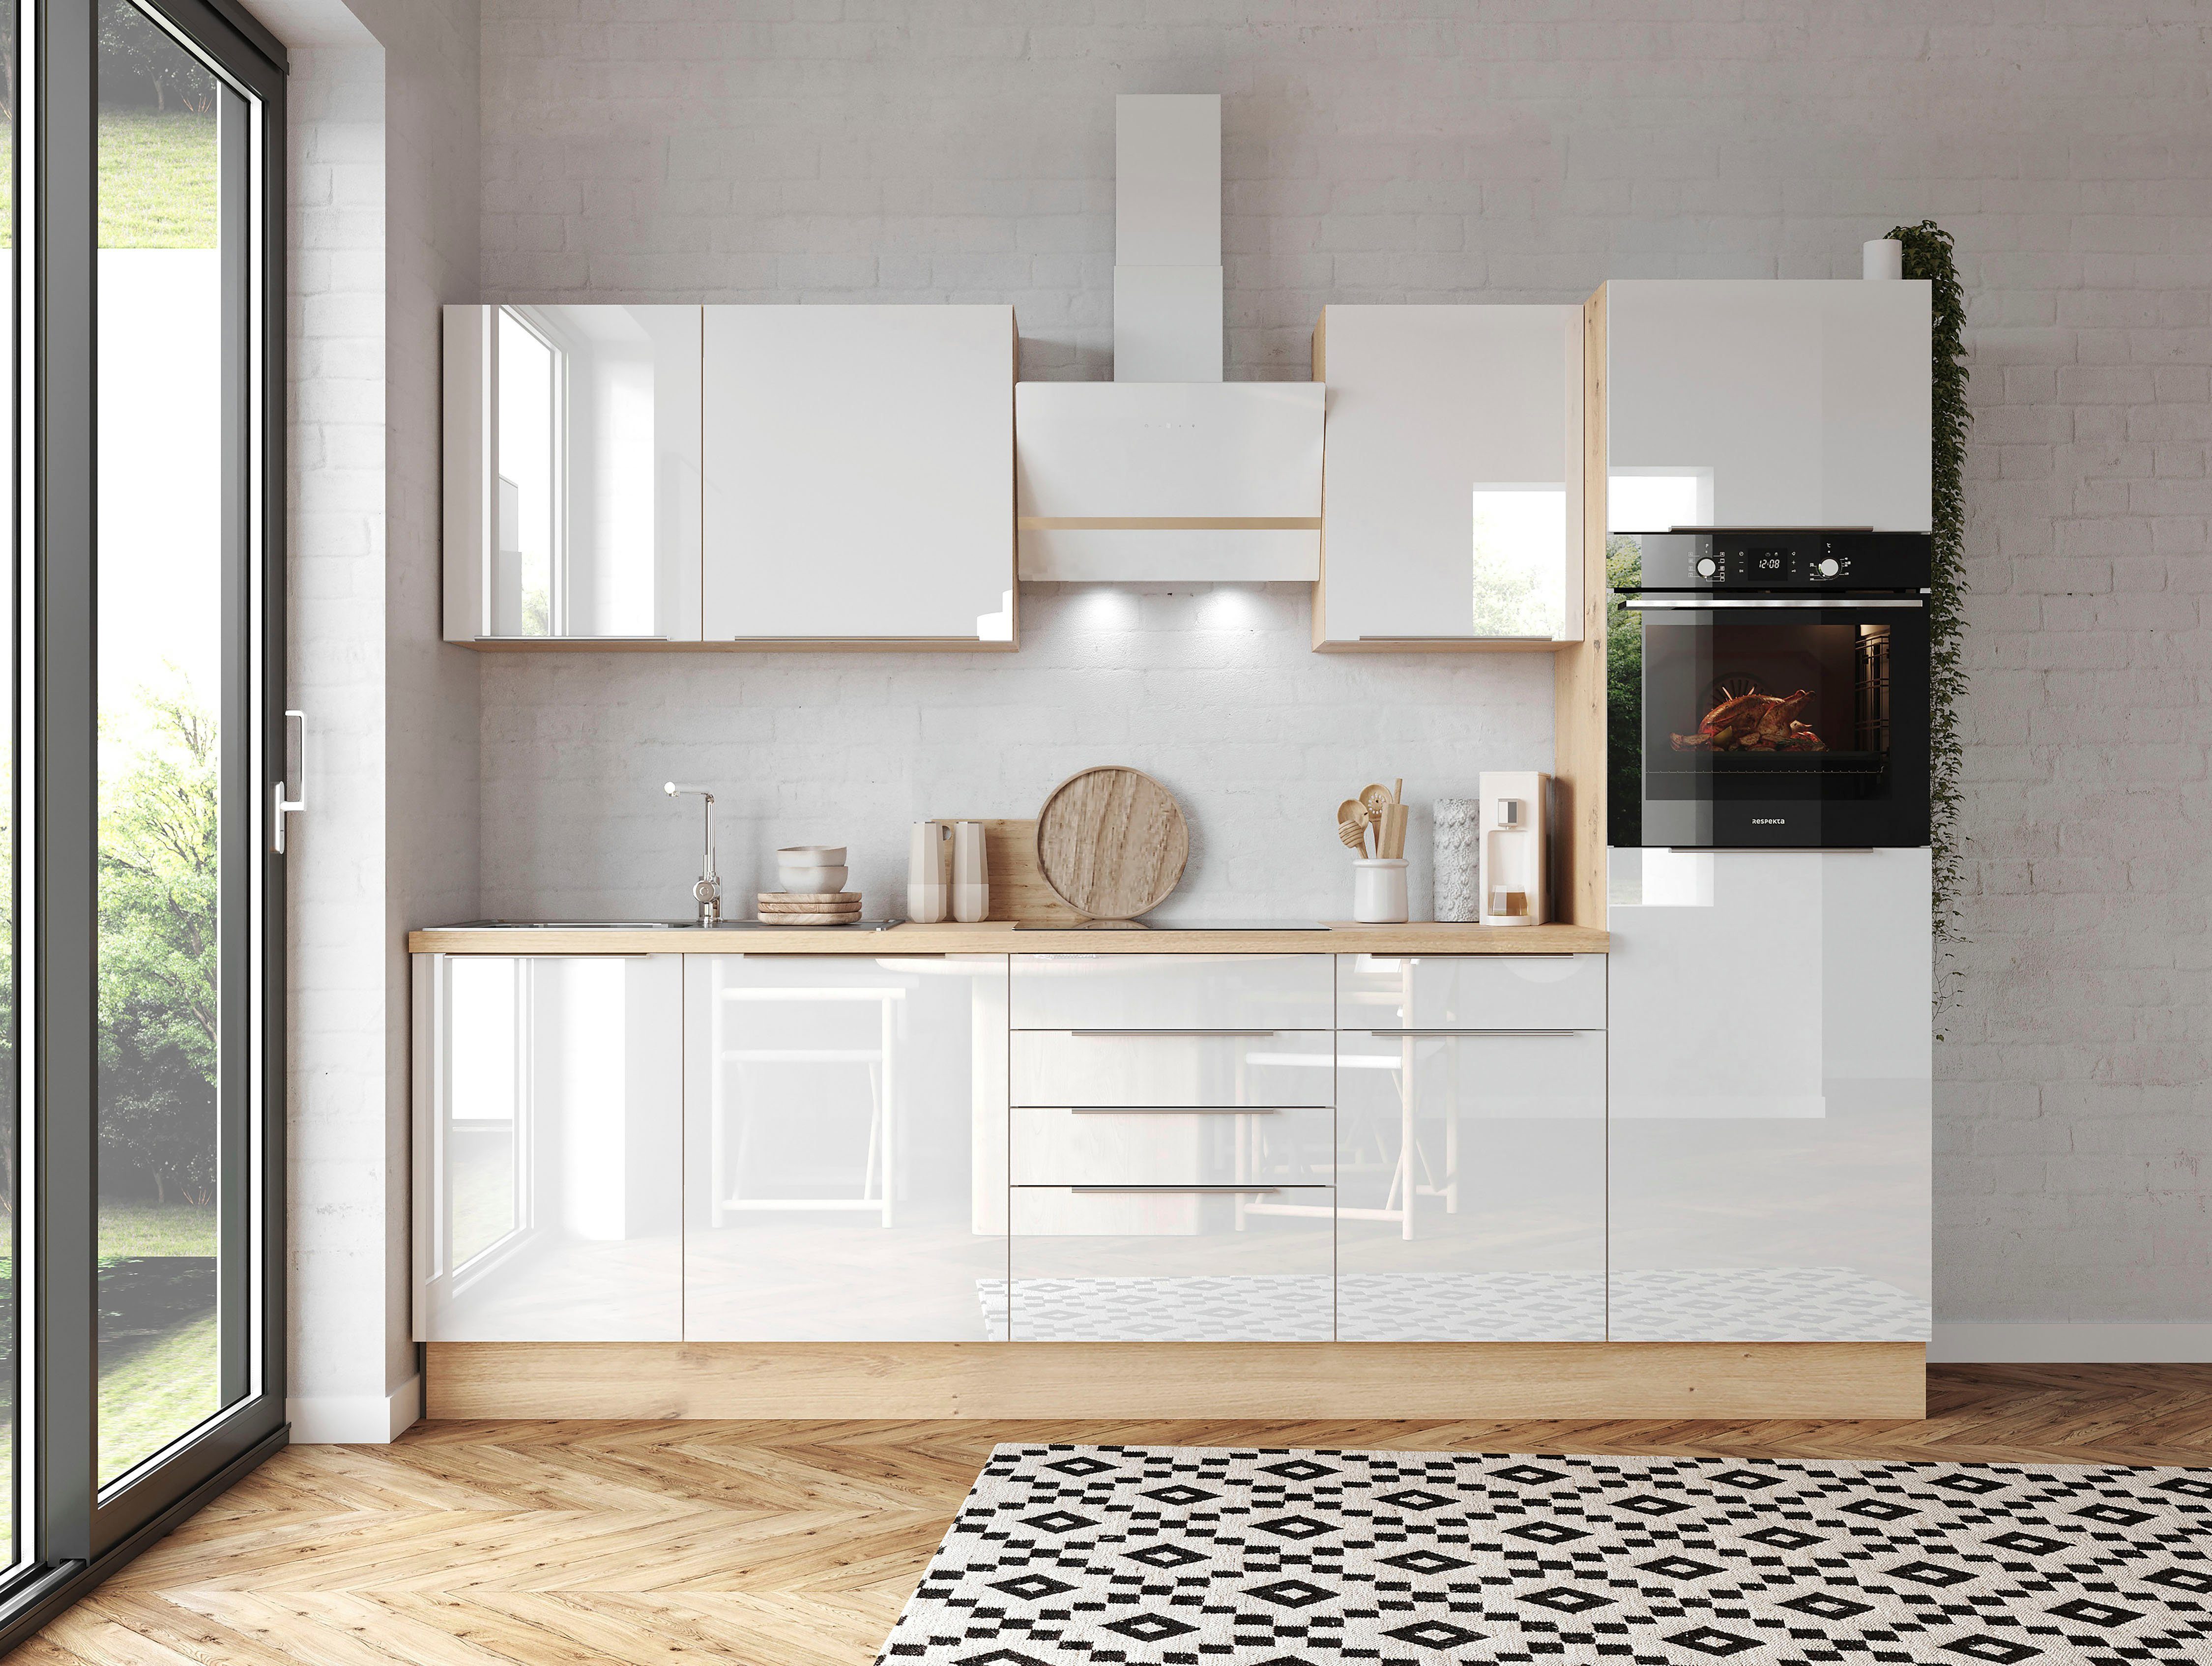 RESPEKTA Küchenzeile Safado aus der Serie Marleen, Breite 280 cm, hochwertige  Ausstattung wie Soft Close Funktion, Alle Scharniere der Türen mit Soft-Close  Funktion